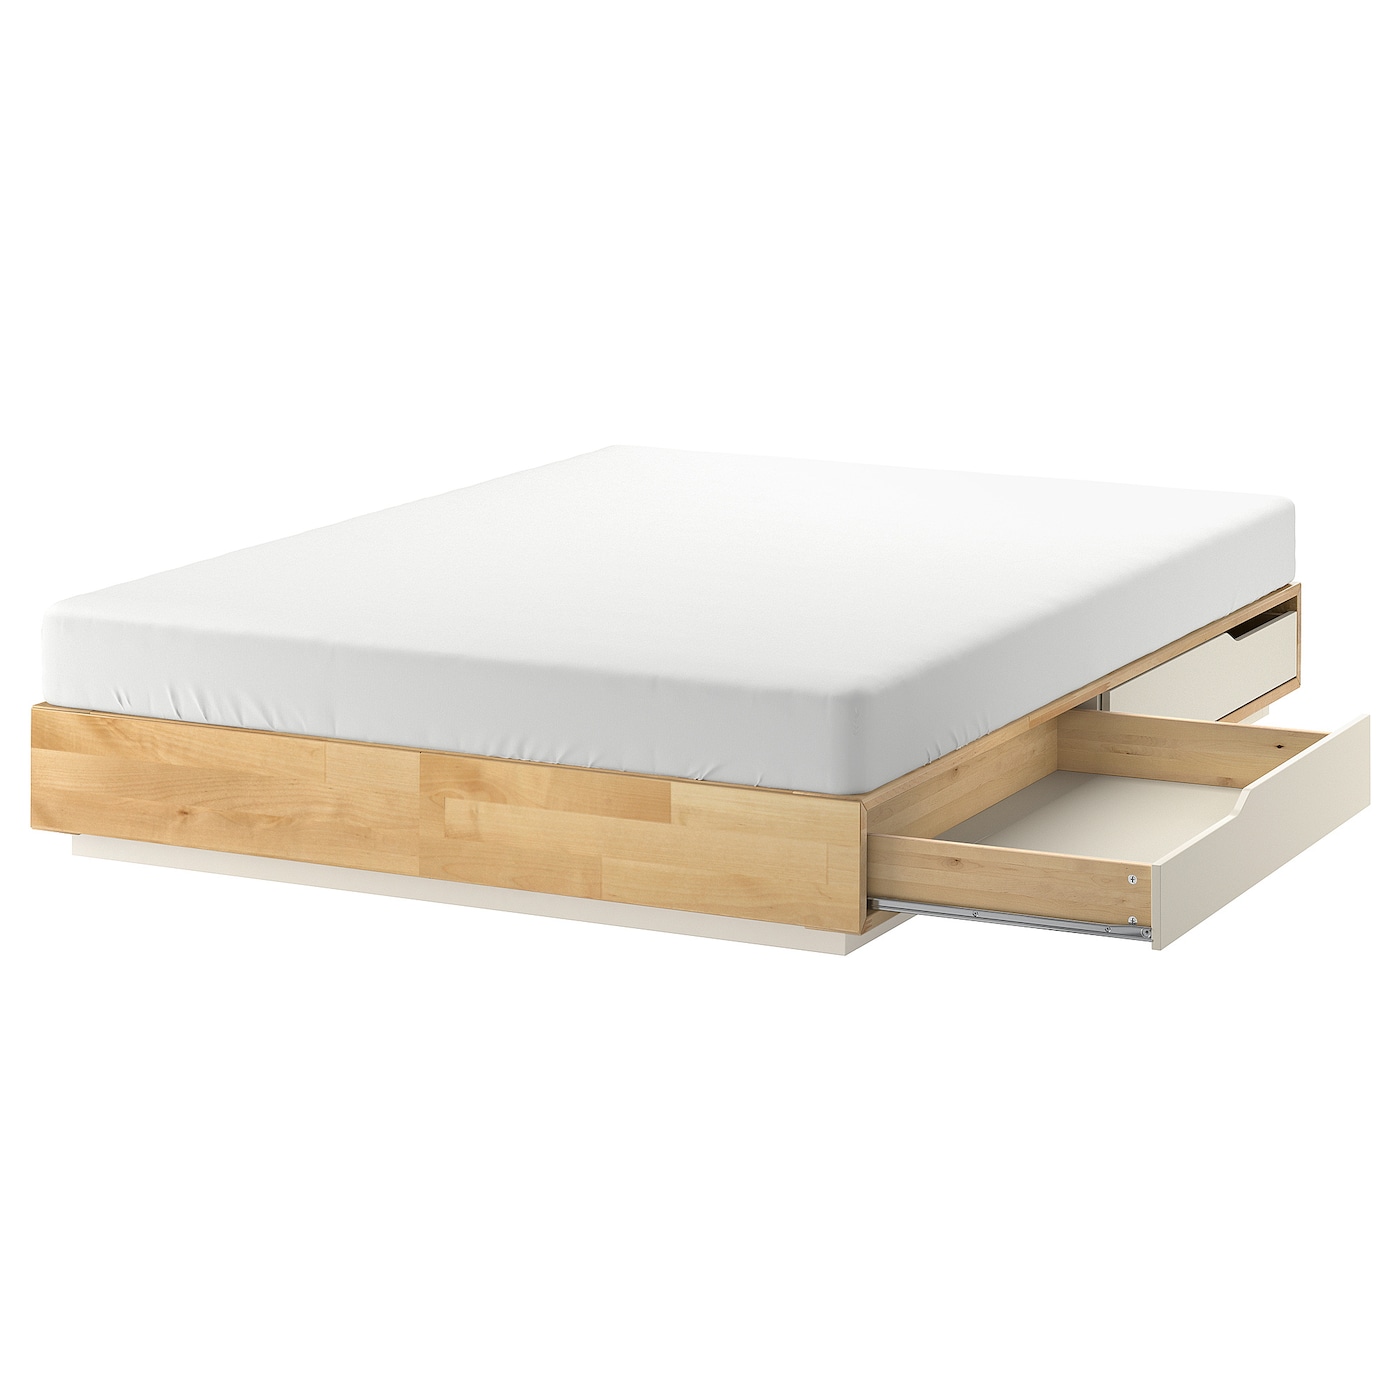 Основание двуспальной кровати с выдвижными ящиками - IKEA MANDAL, 200х140 см, береза/белый, МАНДАЛЬ ИКЕА